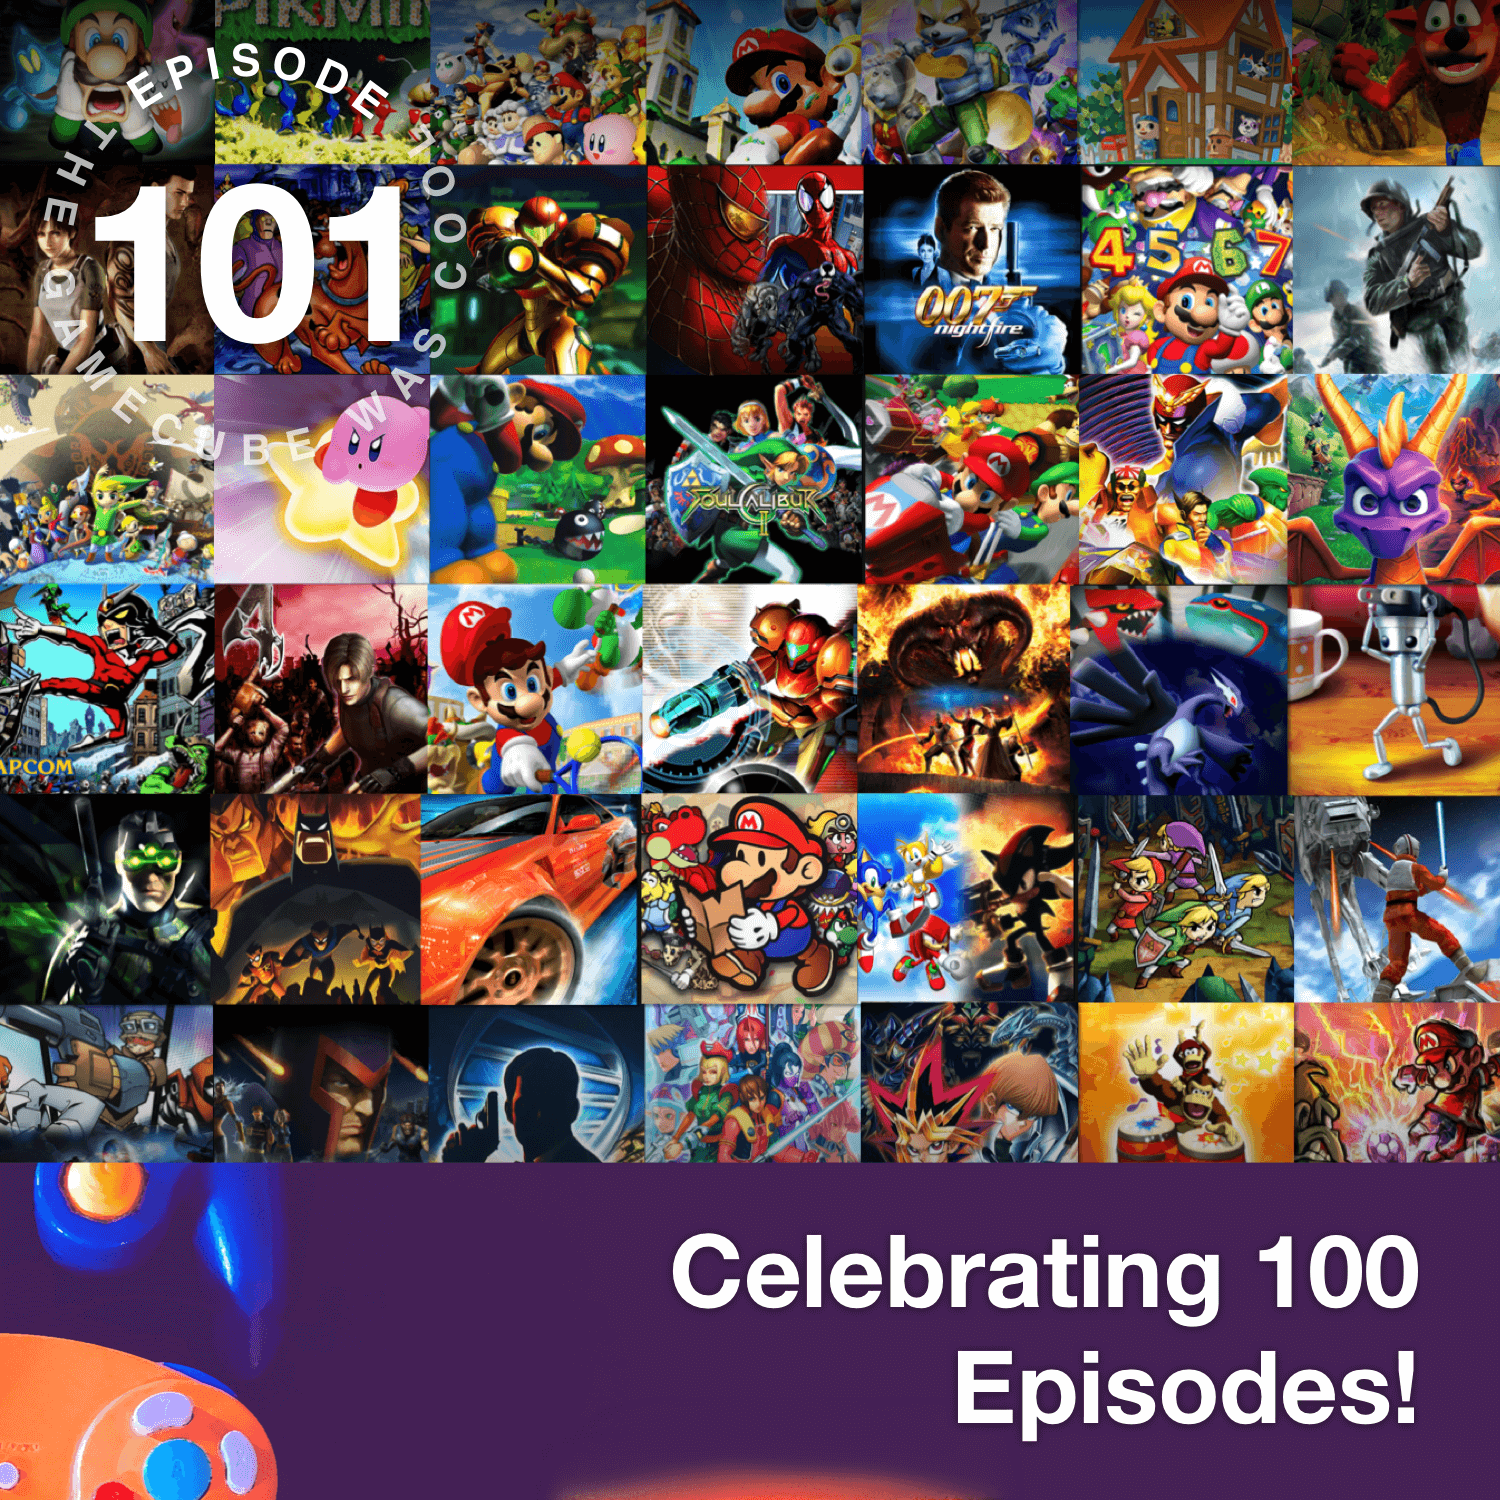 Celebrating 100 Episodes!